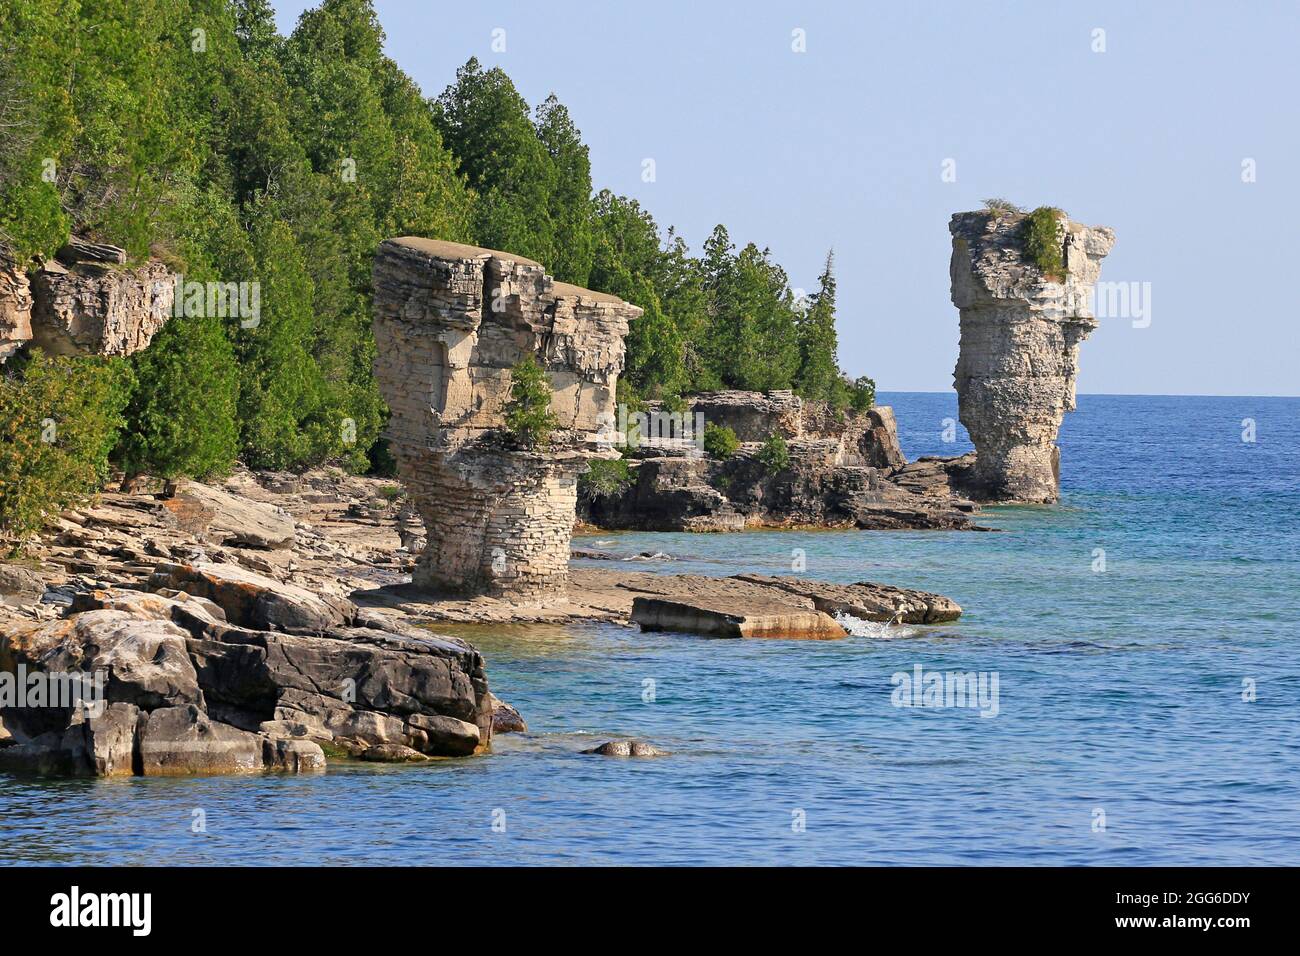 Les deux piliers rocheux s'élèvent des eaux de la baie Georgienne sur l'île Flowerpot, dans le parc marin national Fathom Five, lac Huron, Canada Banque D'Images